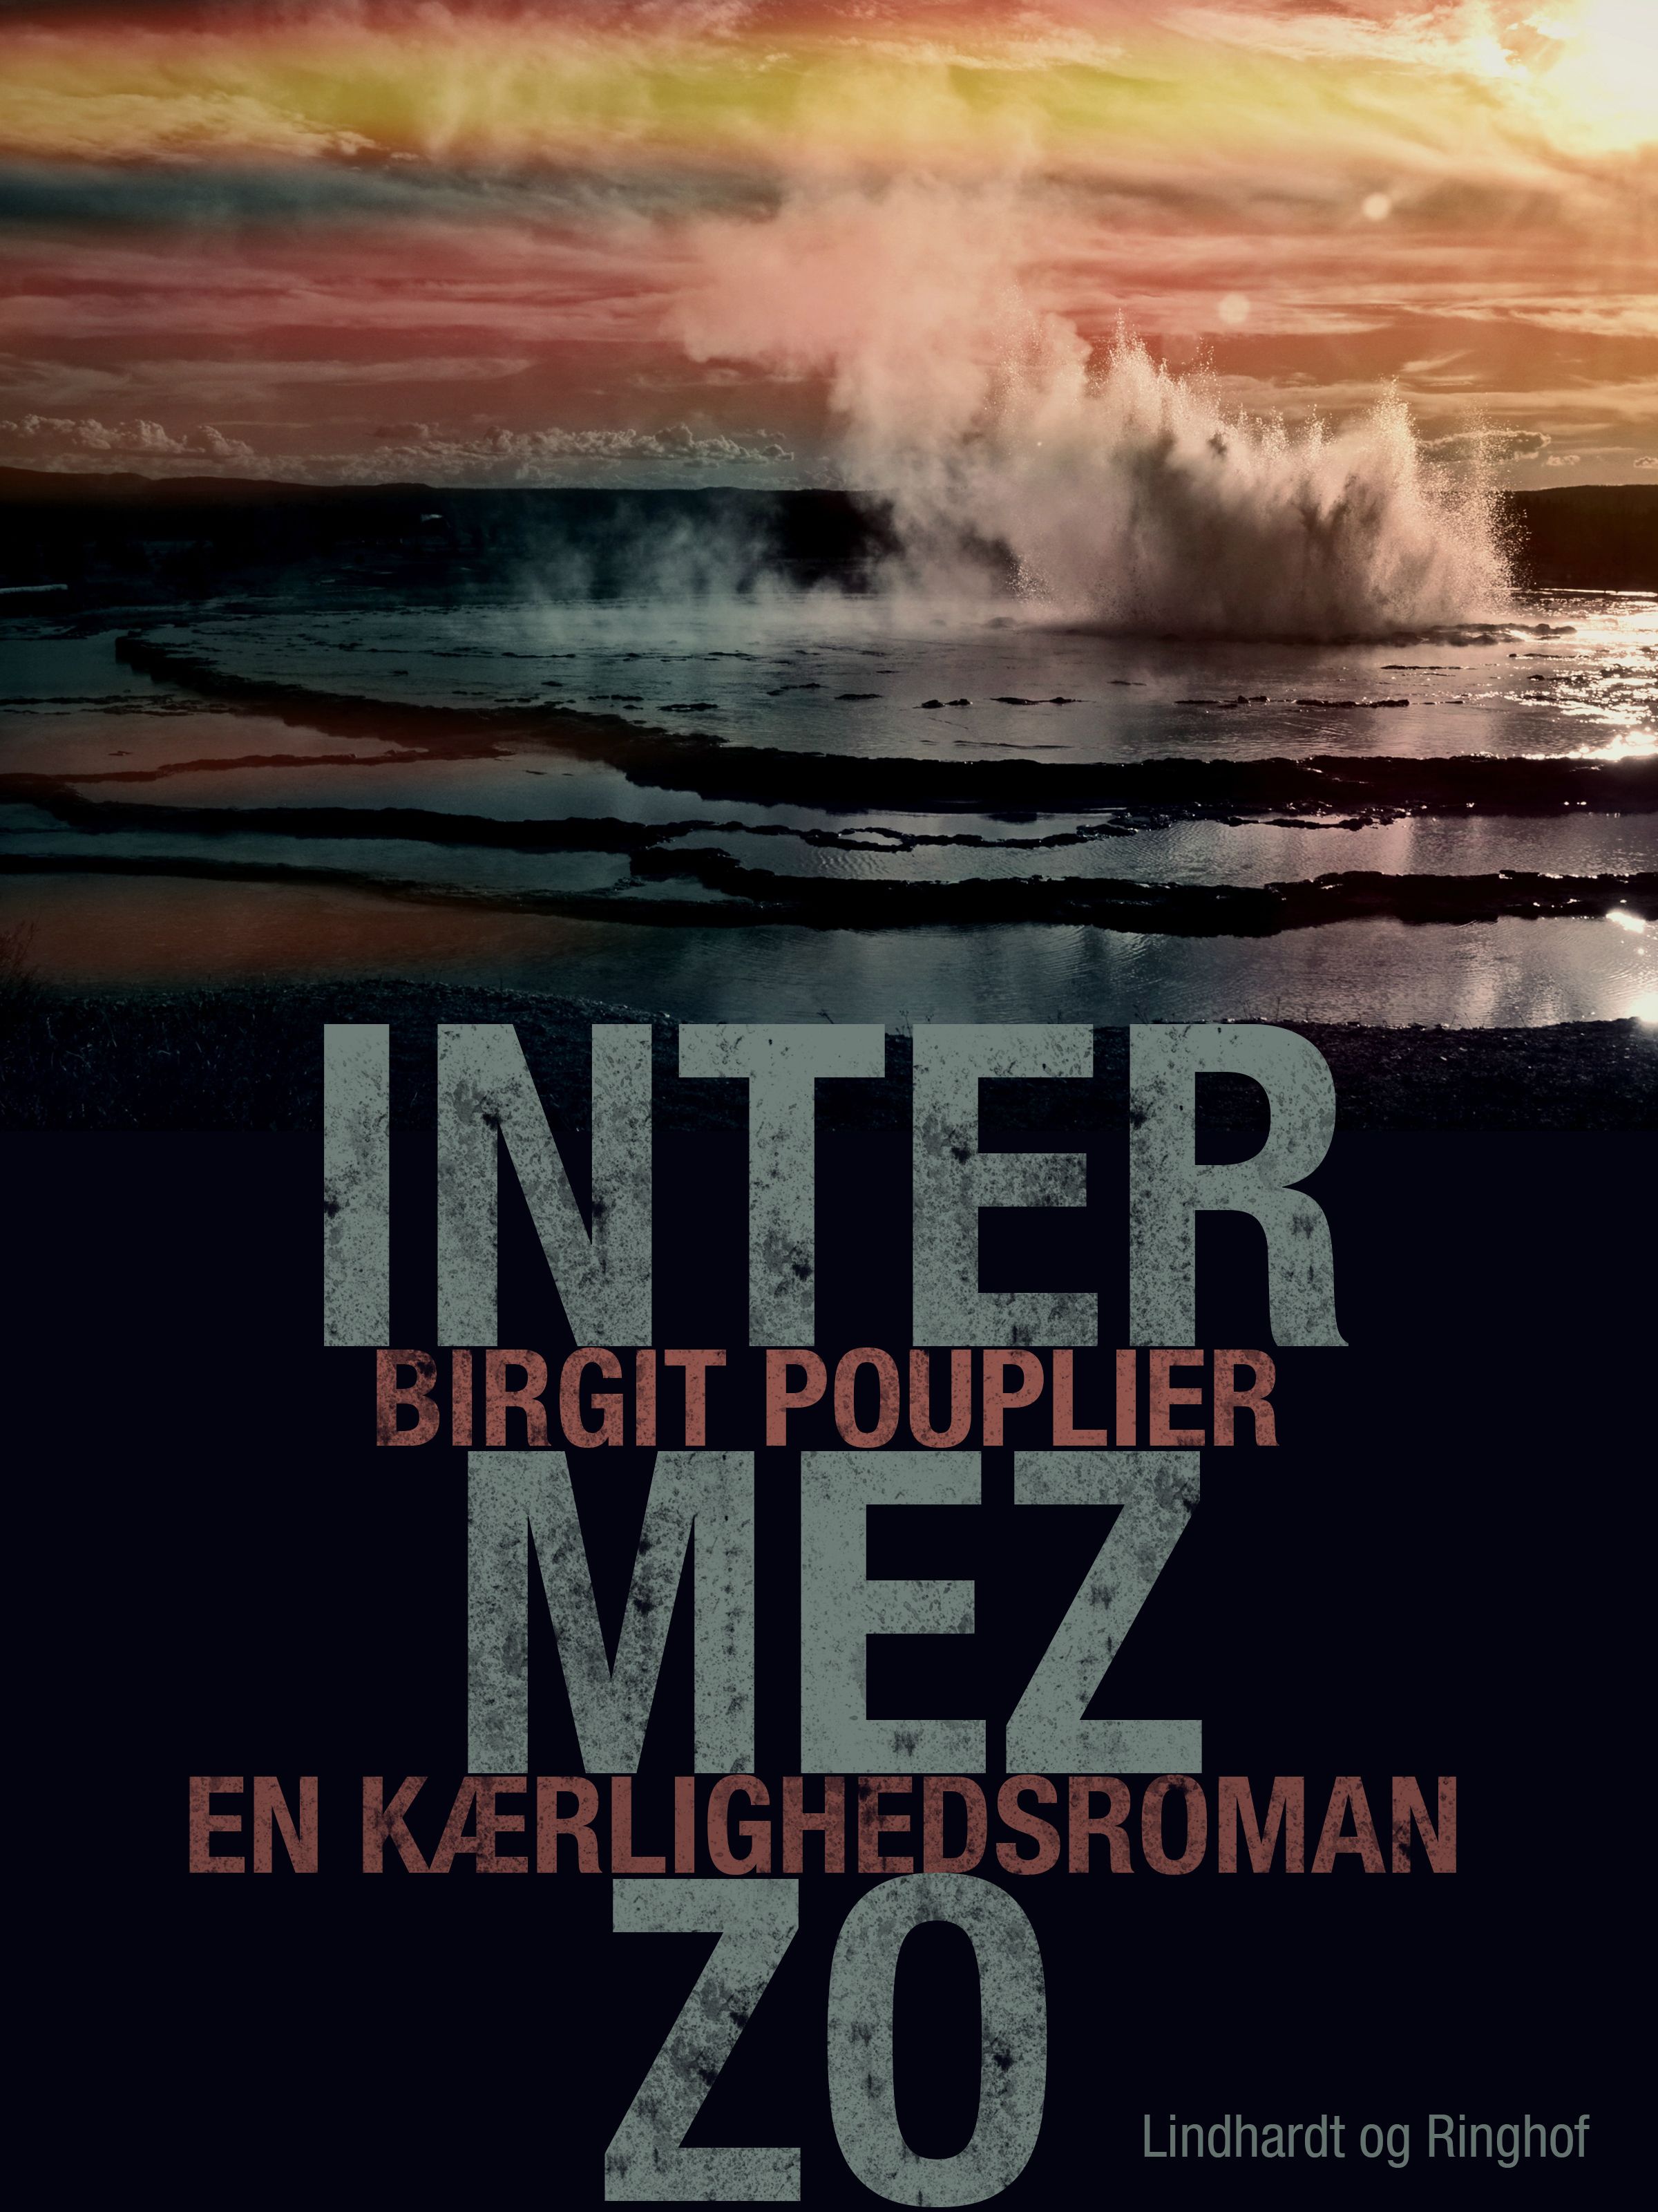 Intermezzo. En kærlighedsroman, lydbog af Birgit Pouplier